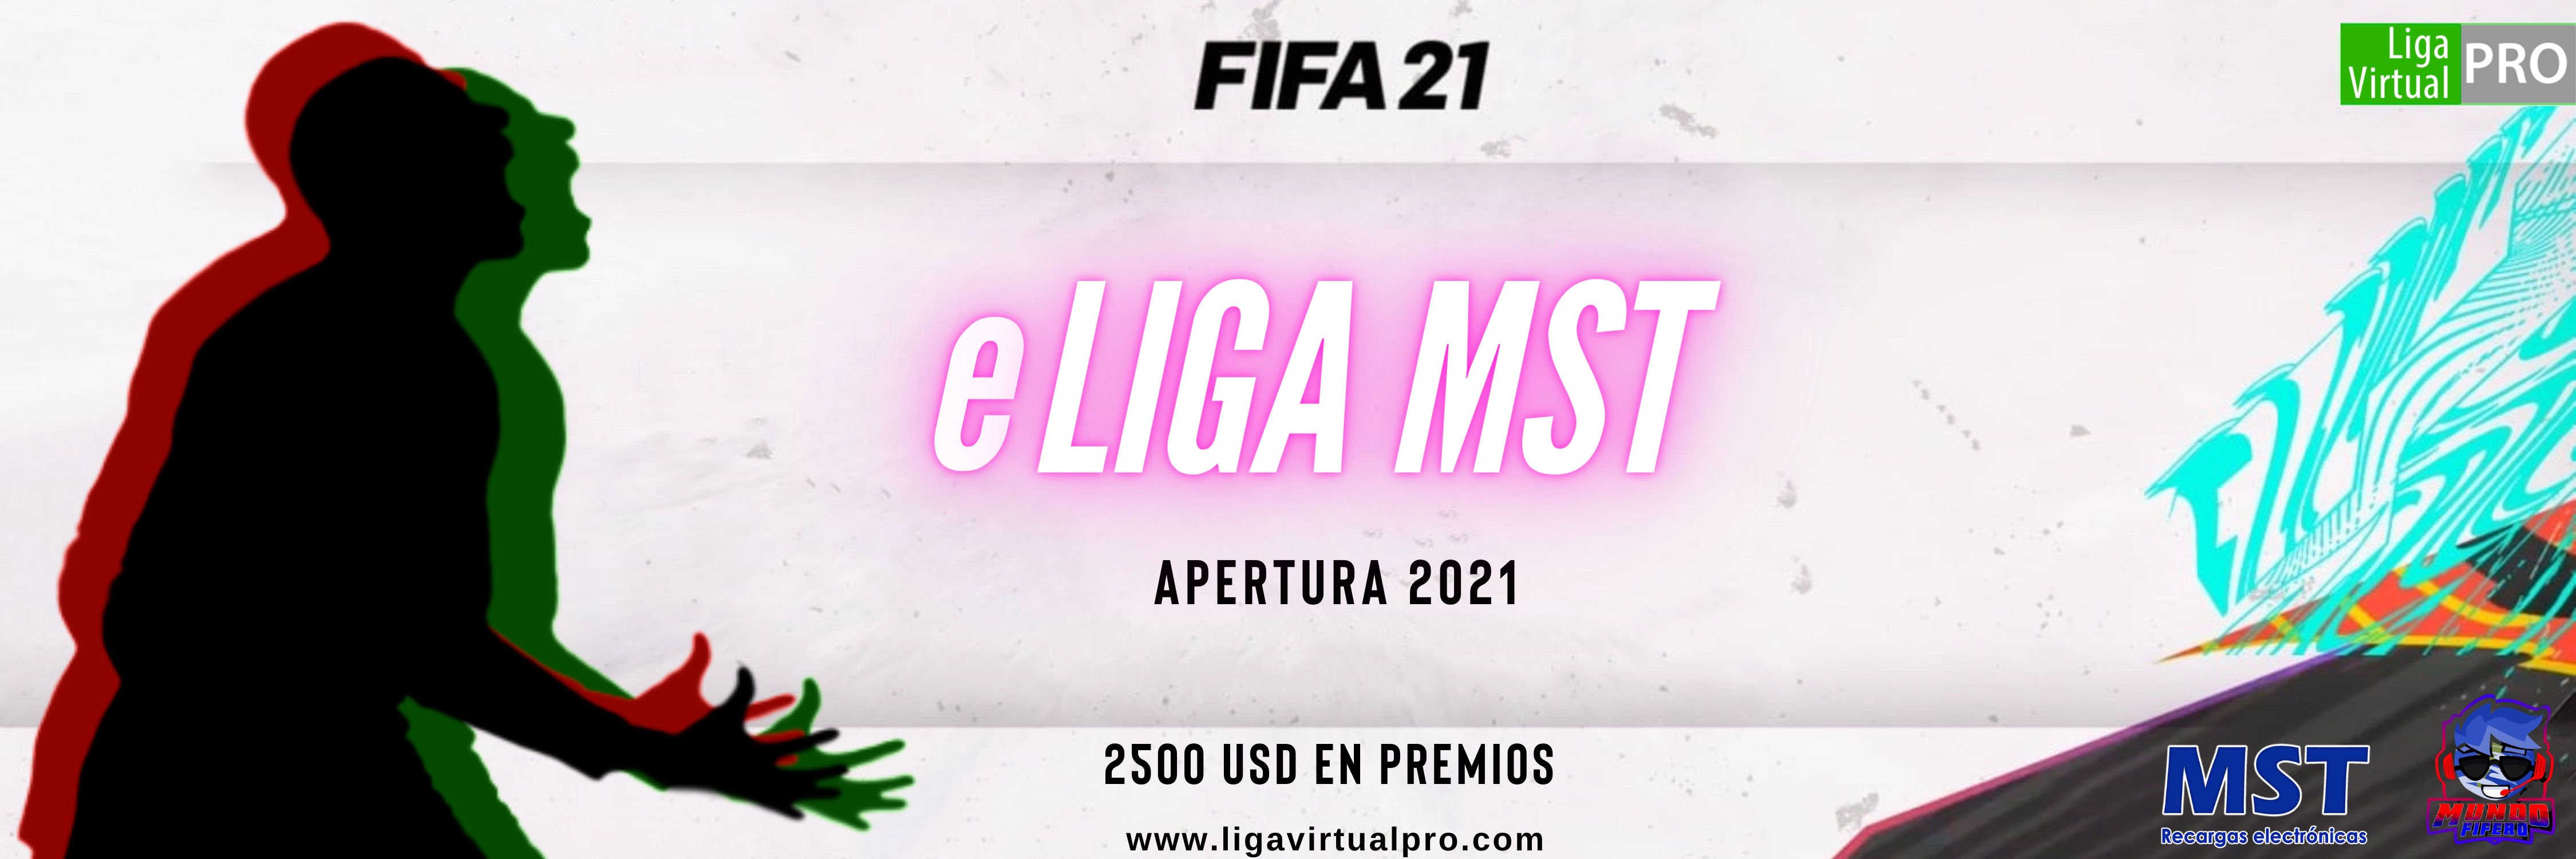 Logo-eLIGA MST - Apertura 2021